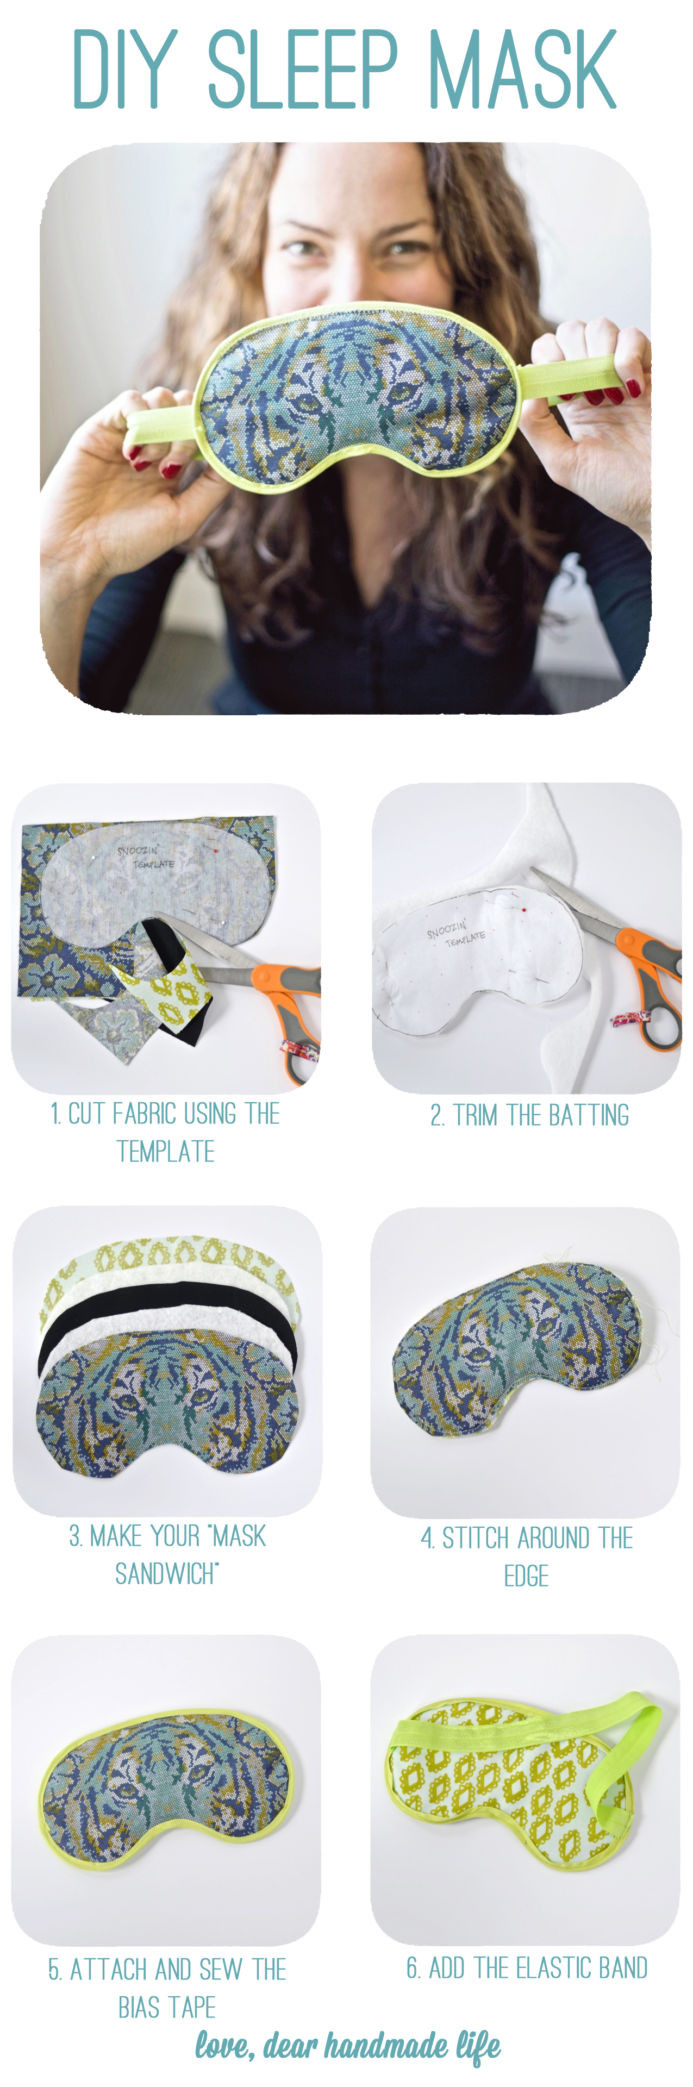 Best ideas about DIY Sleep Masks
. Save or Pin DIY Sleep Mask Dear Handmade Life Now.